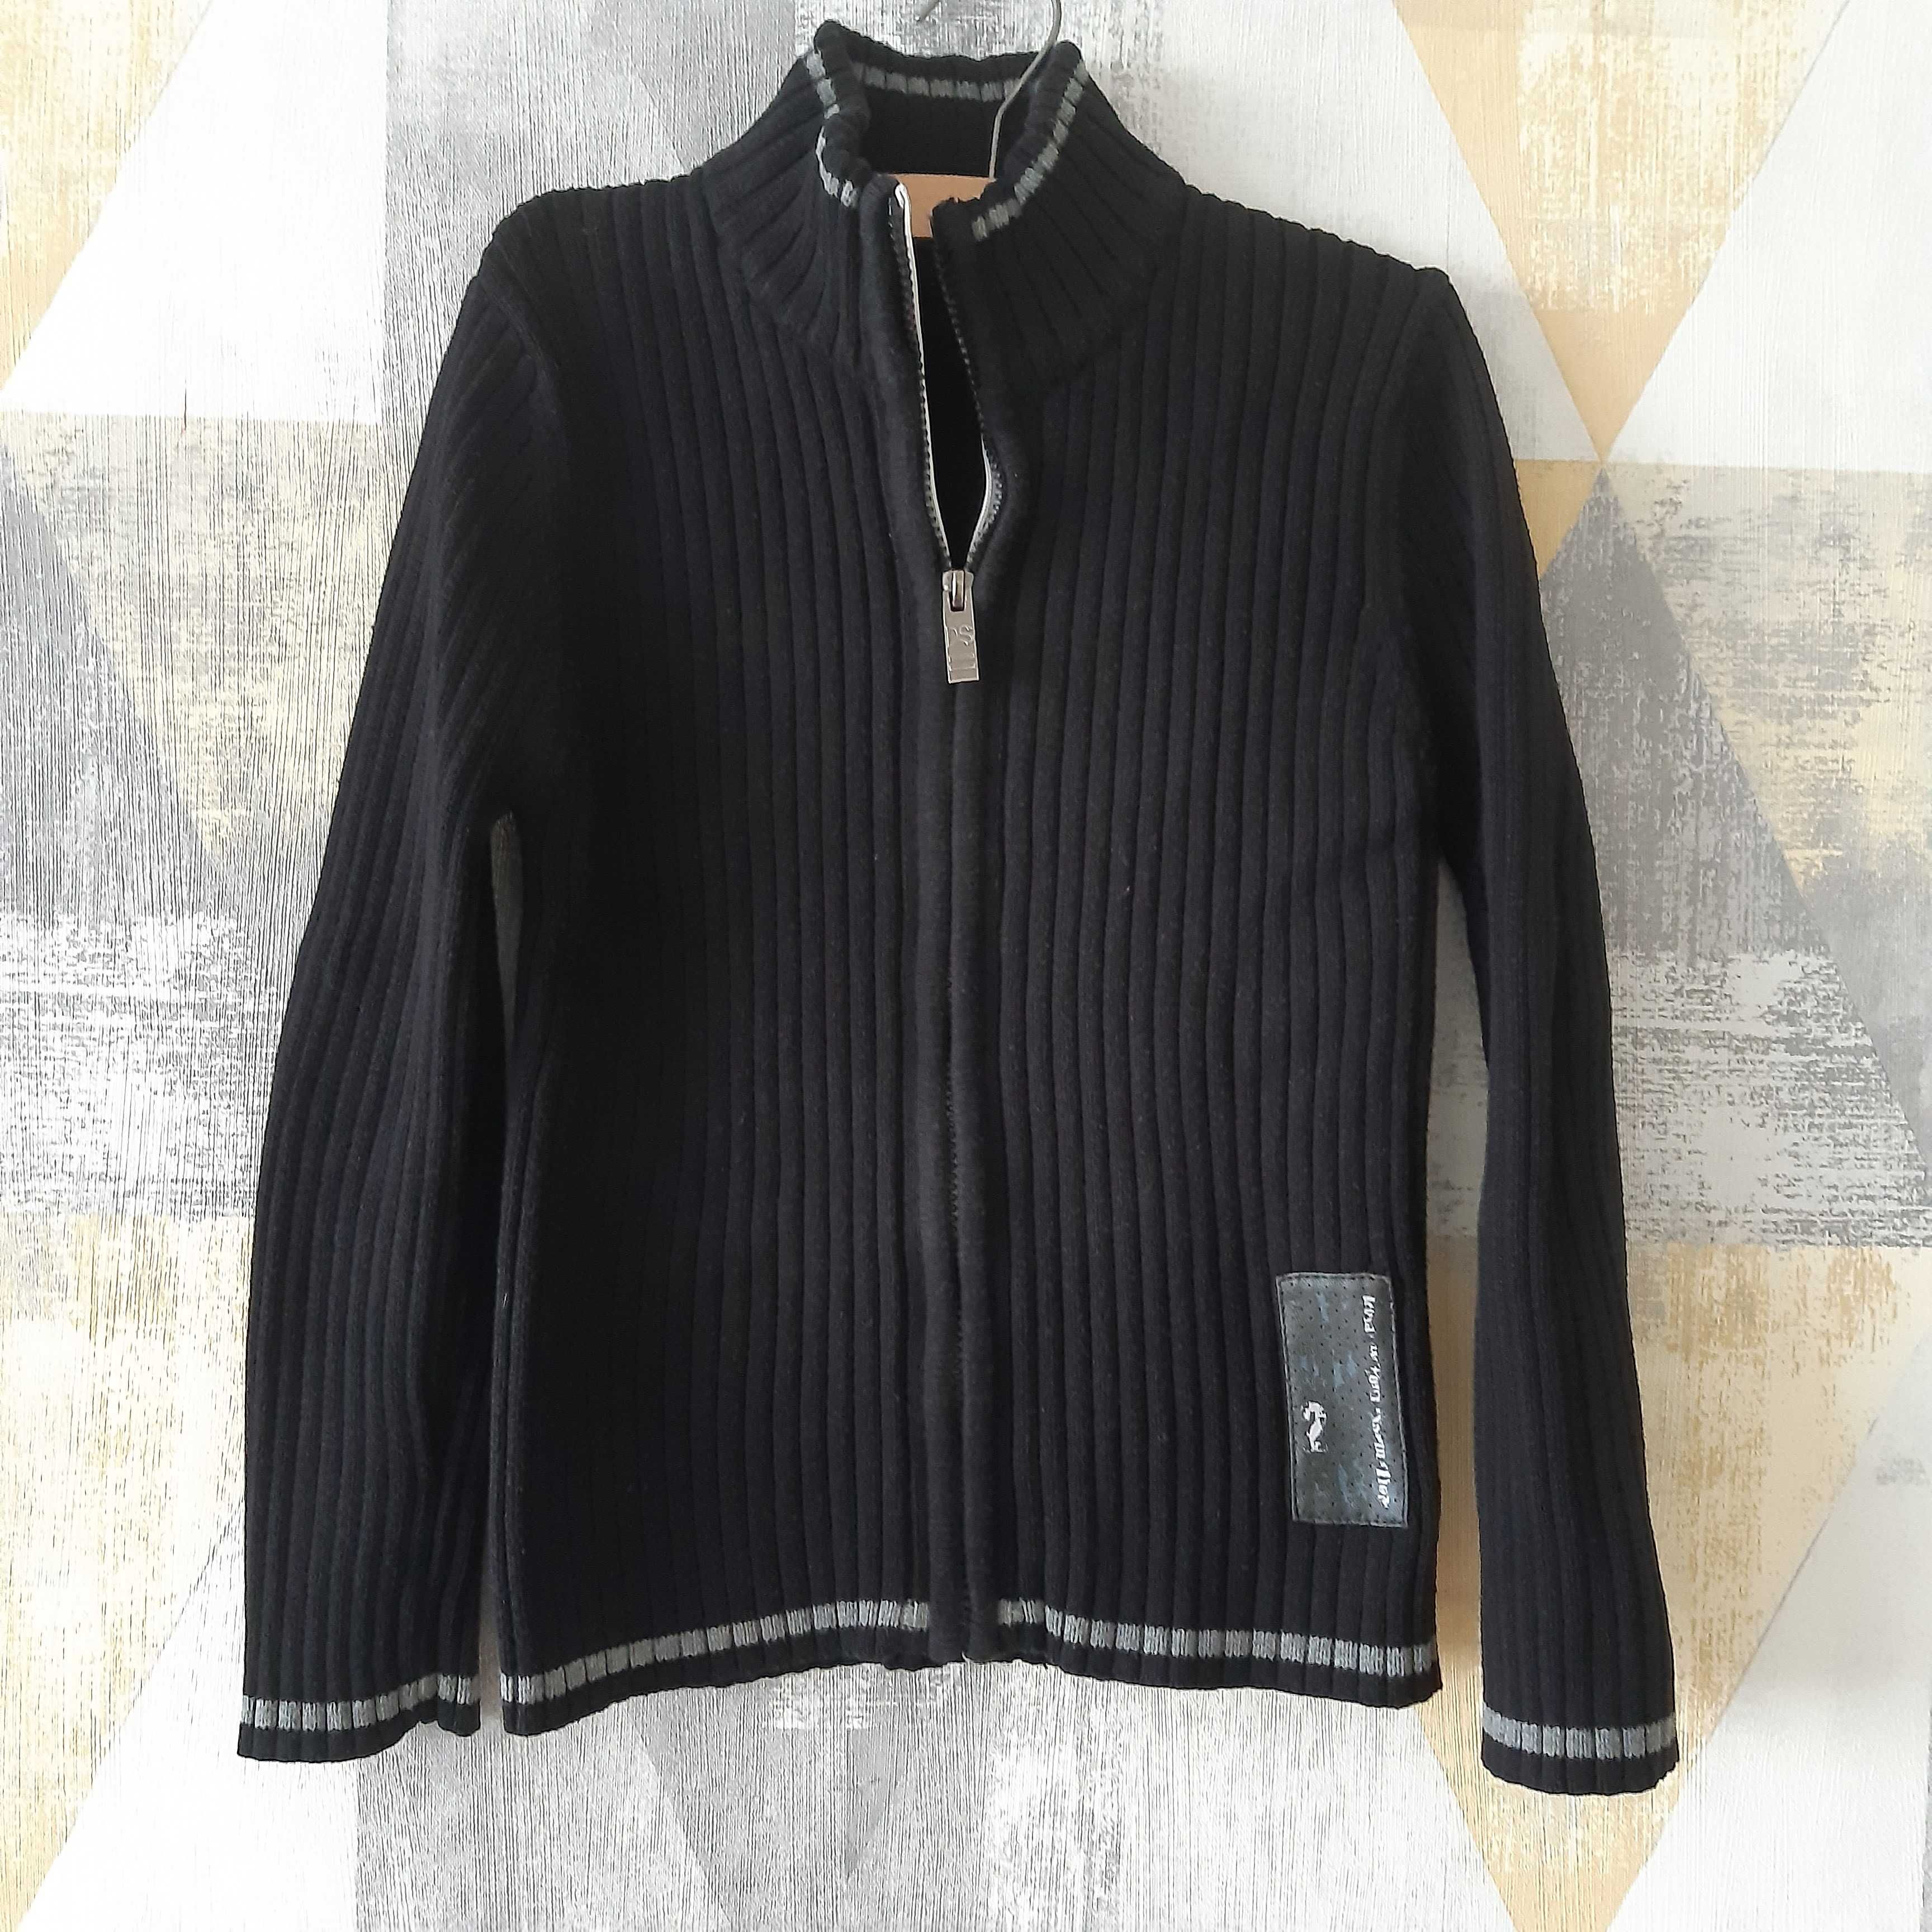 Swetr sweterek r. 128 czarny